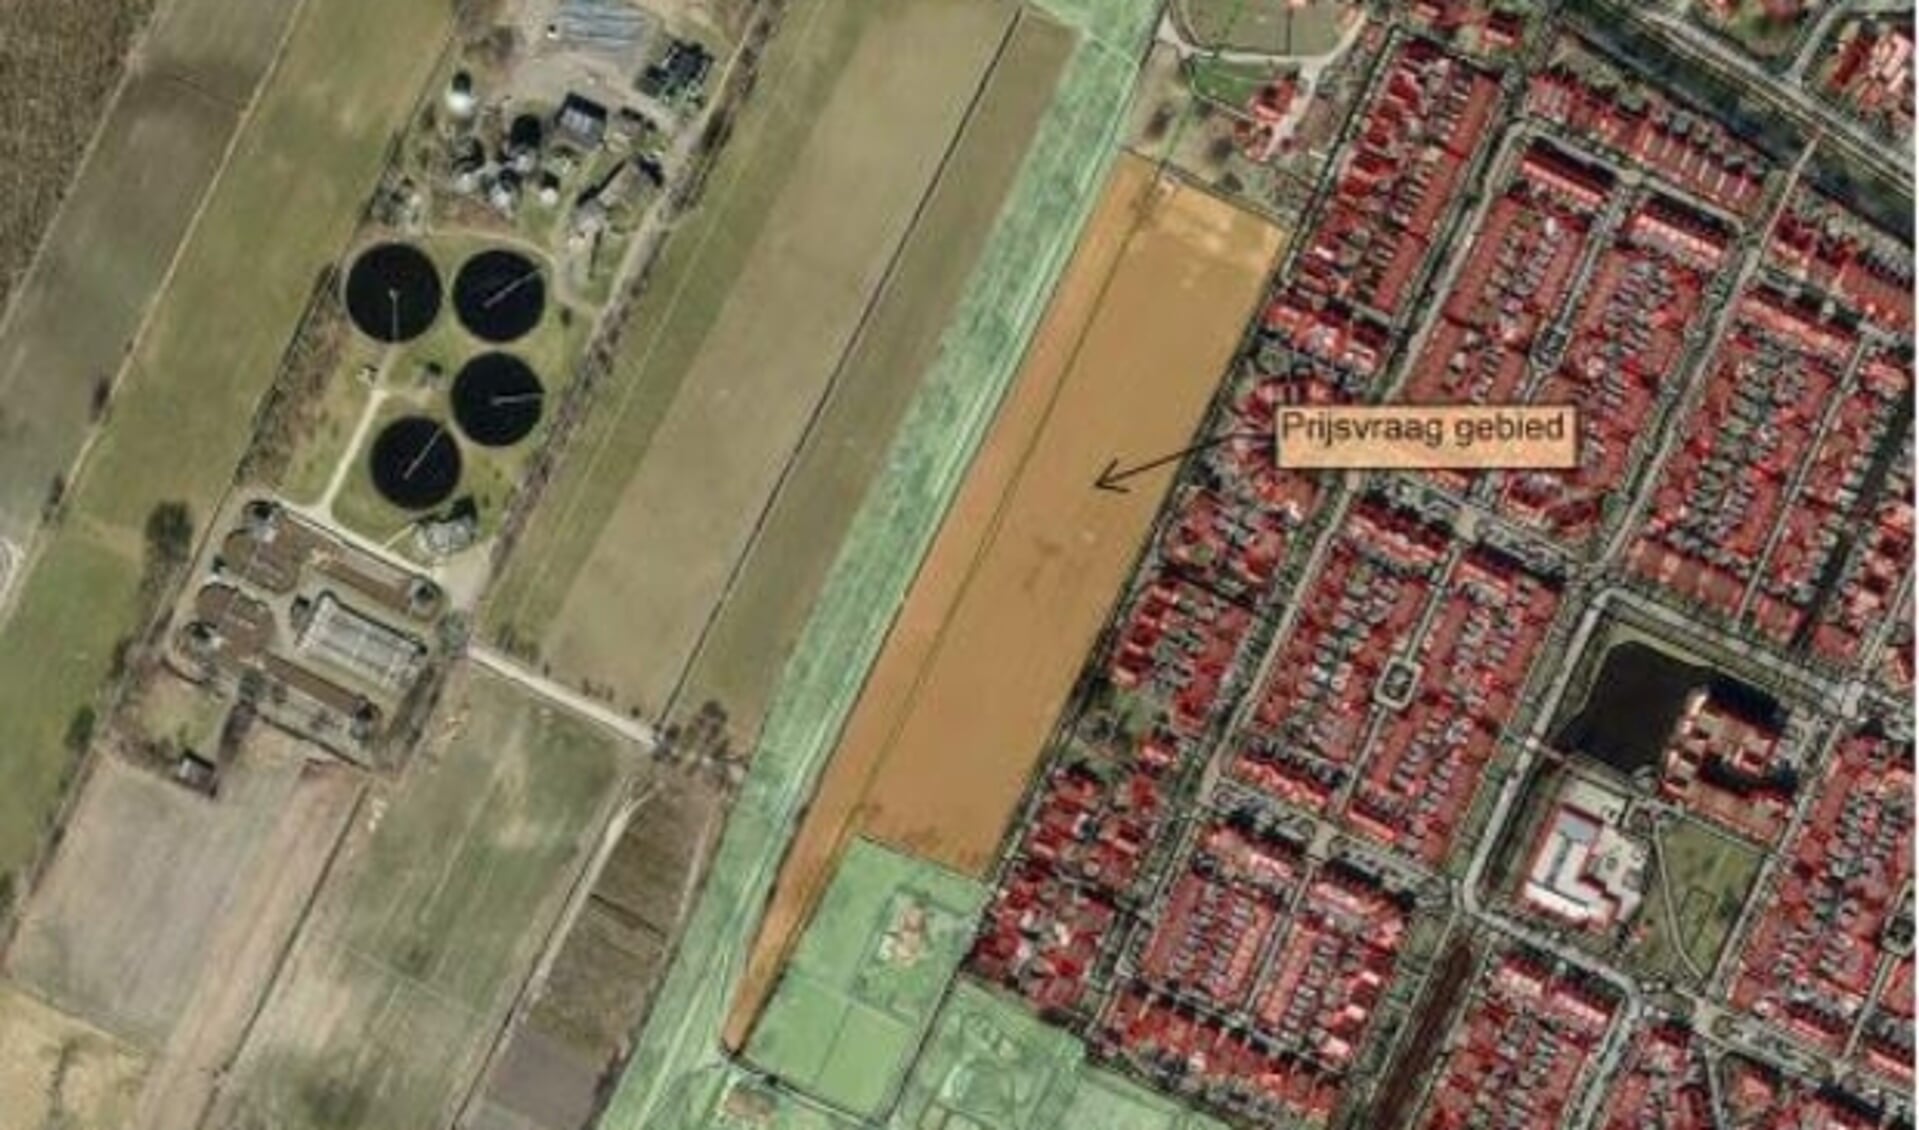 Beoogde locatie Turfweide net naast de Slaperdijk, voorheen Gilbertgaard. De vier rondingen links zijn van de waterzuiveringsinstallatie aan de andere kant van de Slaperdijk, op grondgebied van de gemeente Utrechtse Heuvelrug. 